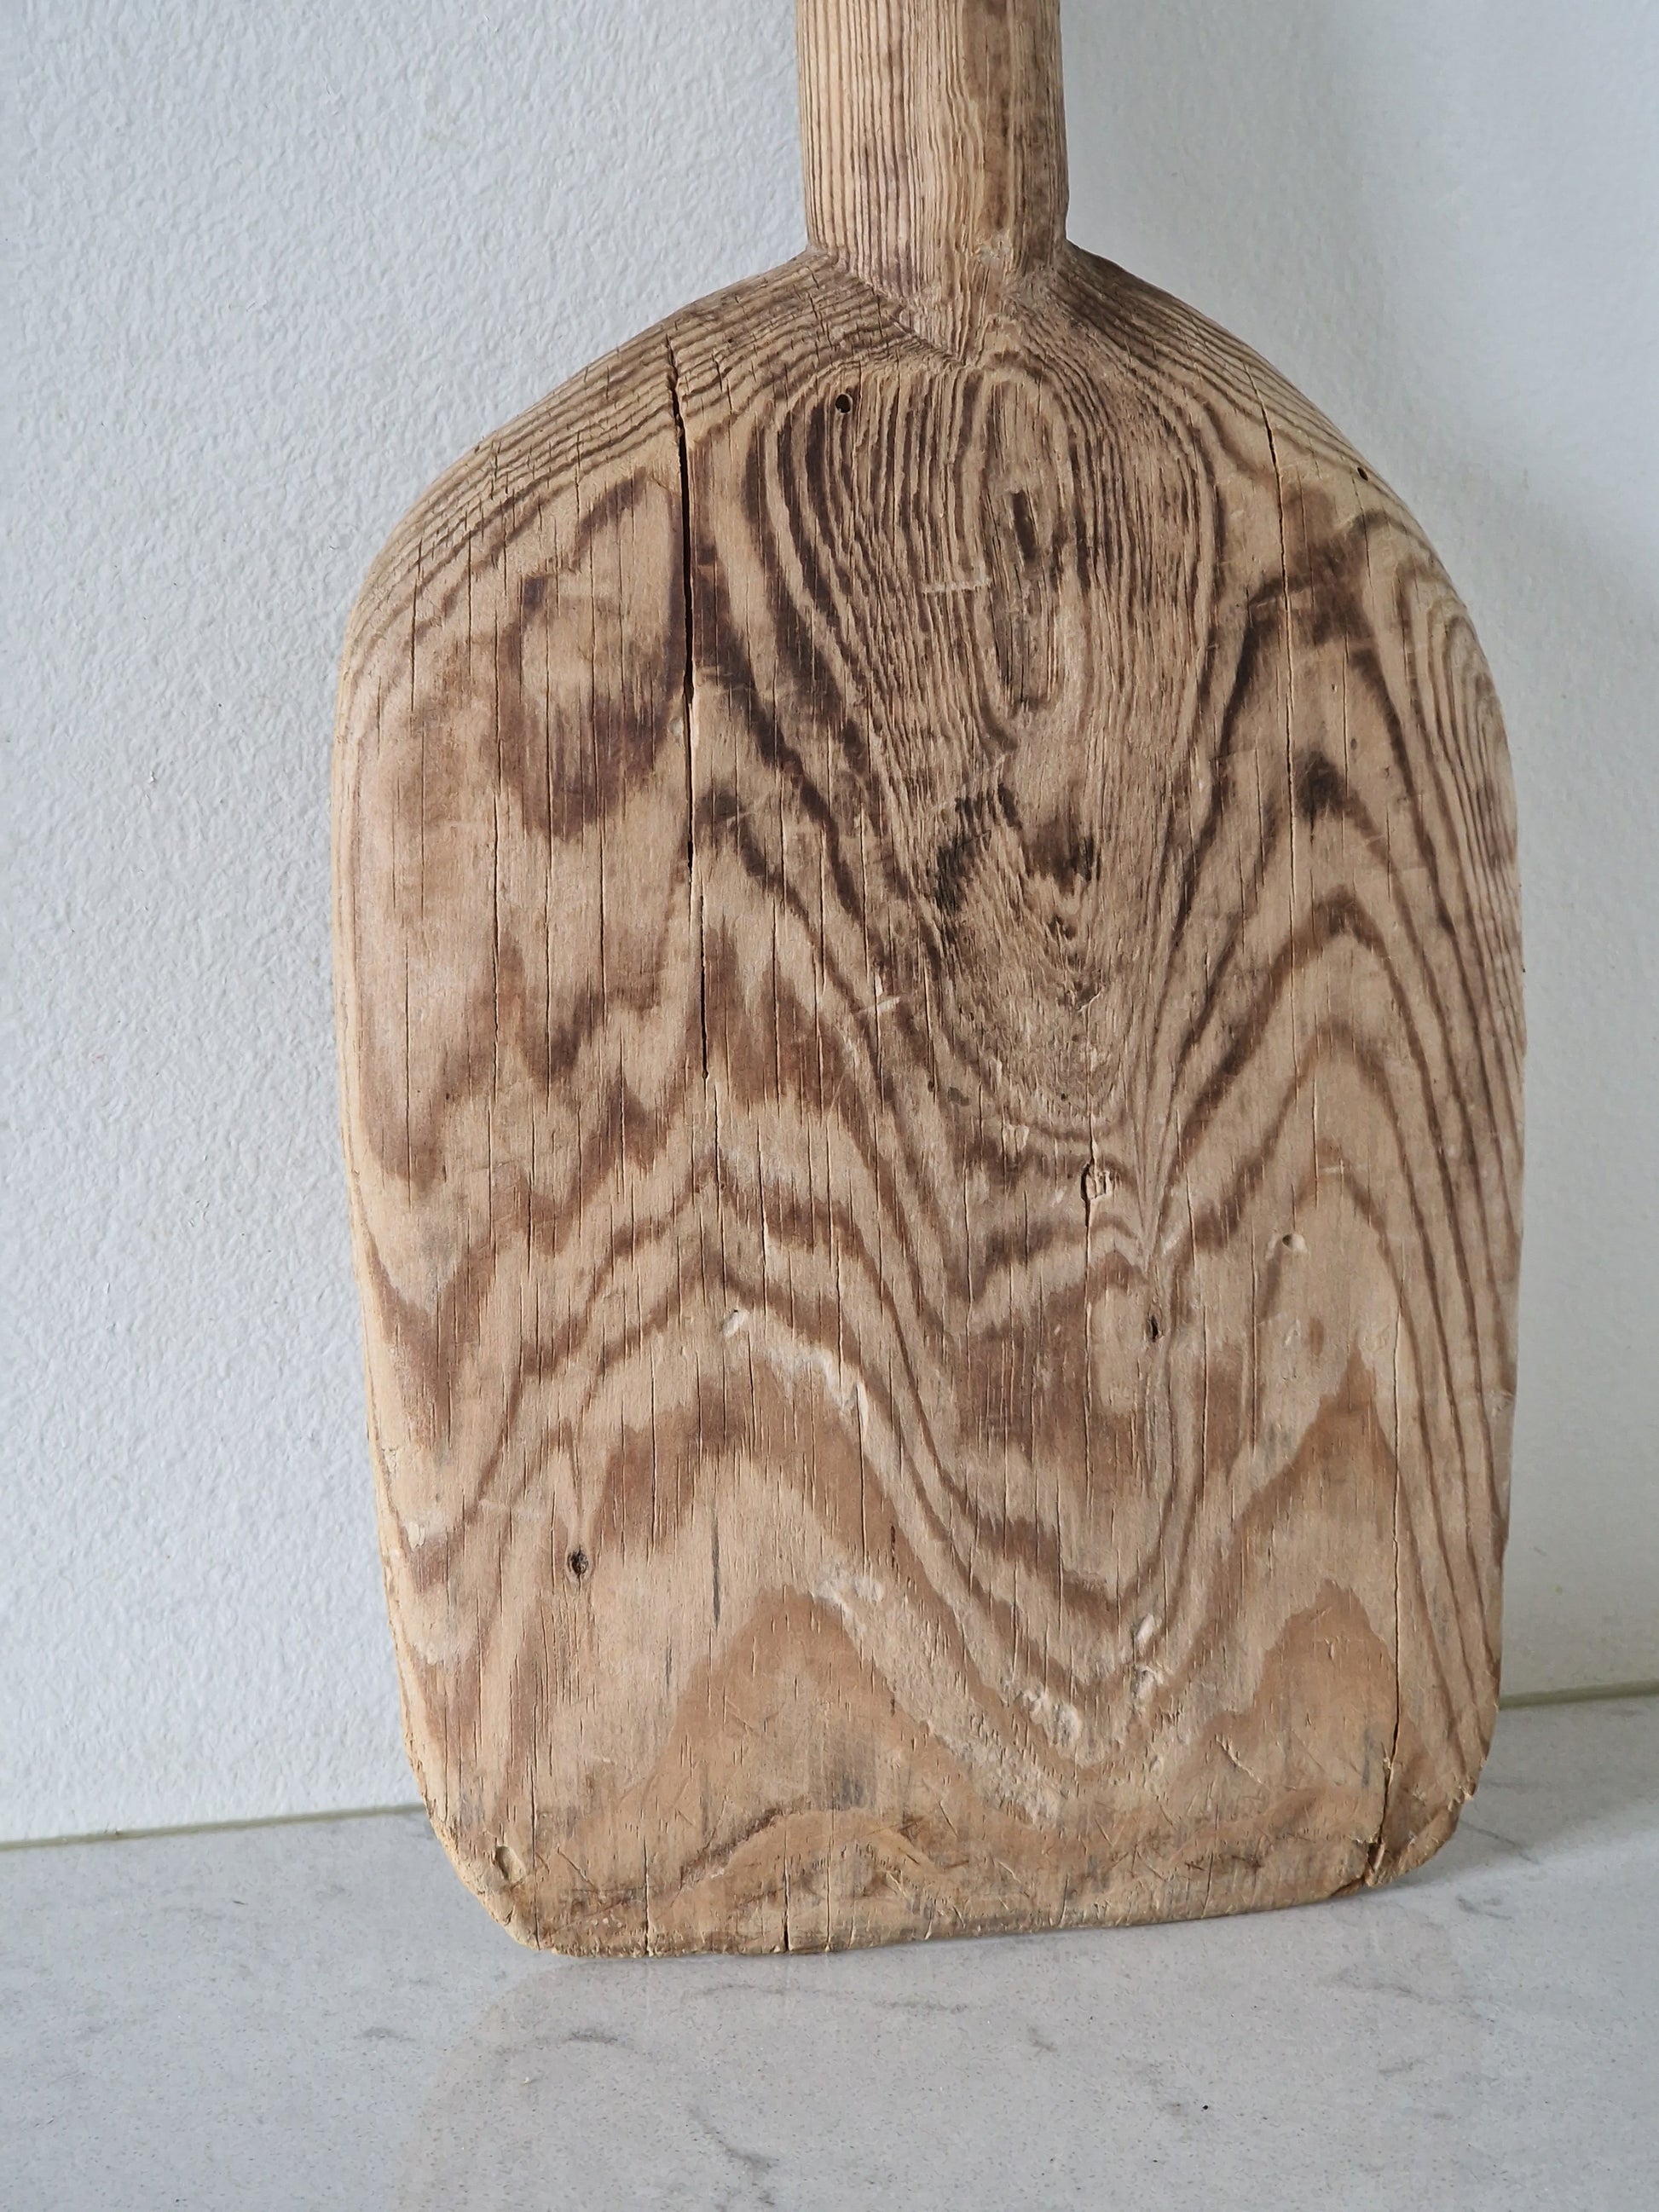 Vanha puinen leipälapio/tarjoilulauta